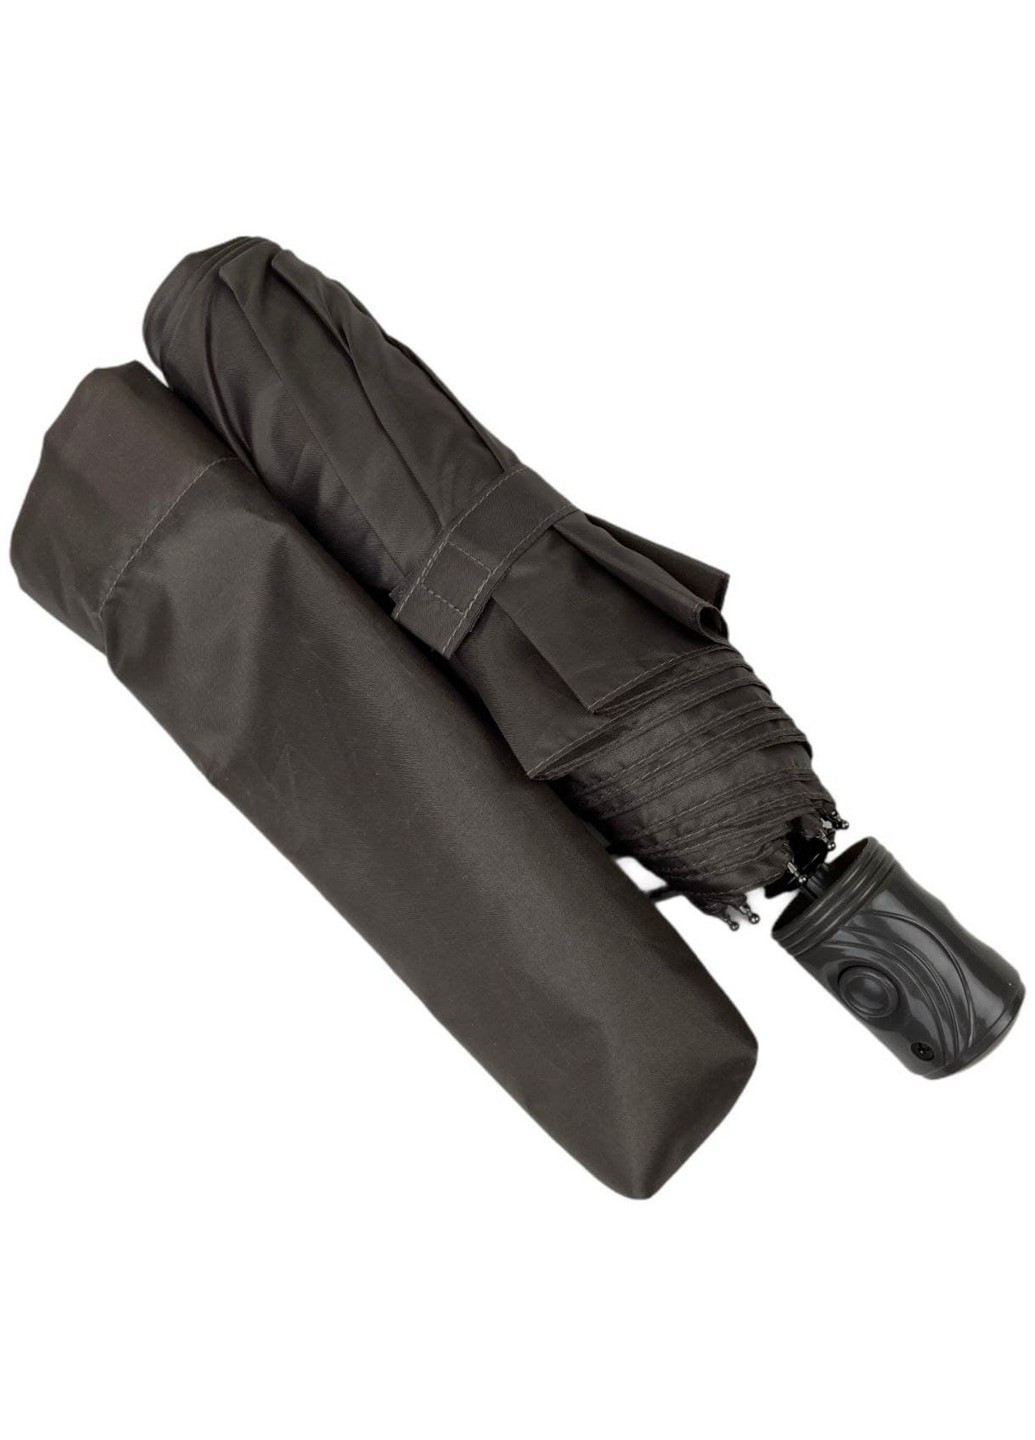 Женский зонт полуавтомат 98 см SL (258638171)